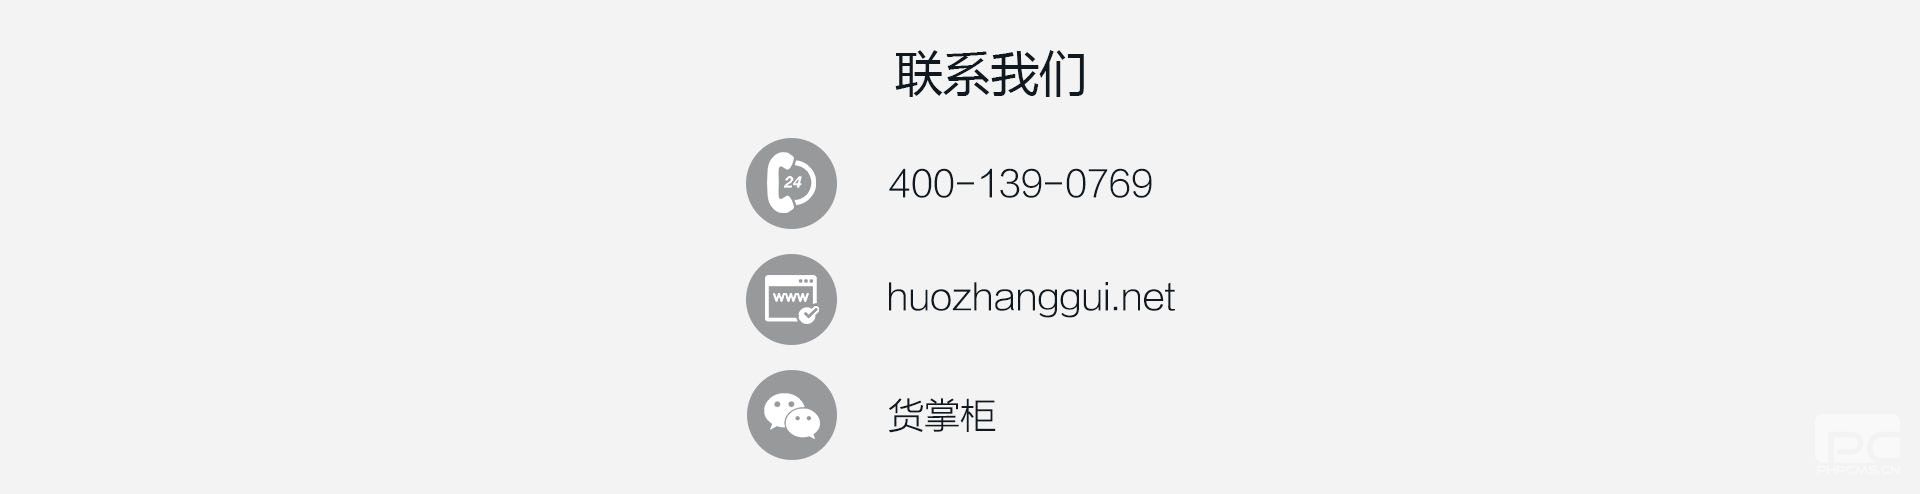 货掌柜运输企业解决方案7(www.huozhanggui.net)